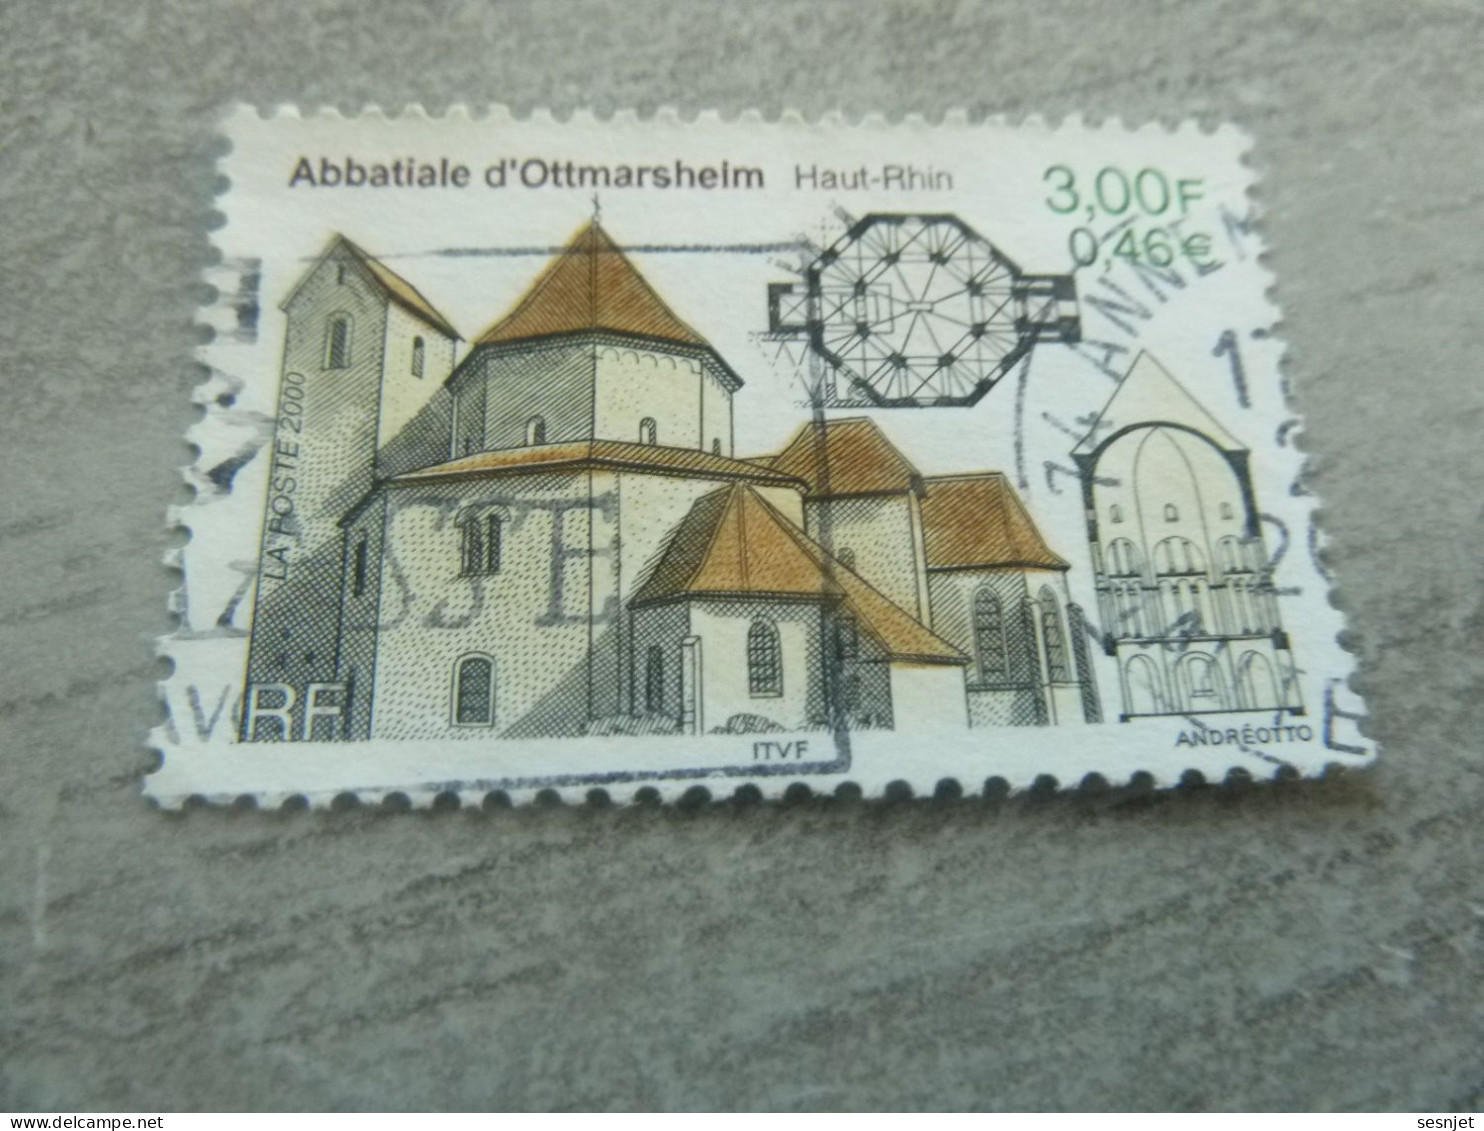 Abbatiale D'Ottmarsheim - Haut-Rhin - 3f. (0.46 €) - Yt 3336 - Multicolore - Oblitéré - Année 2000 - - Eglises Et Cathédrales